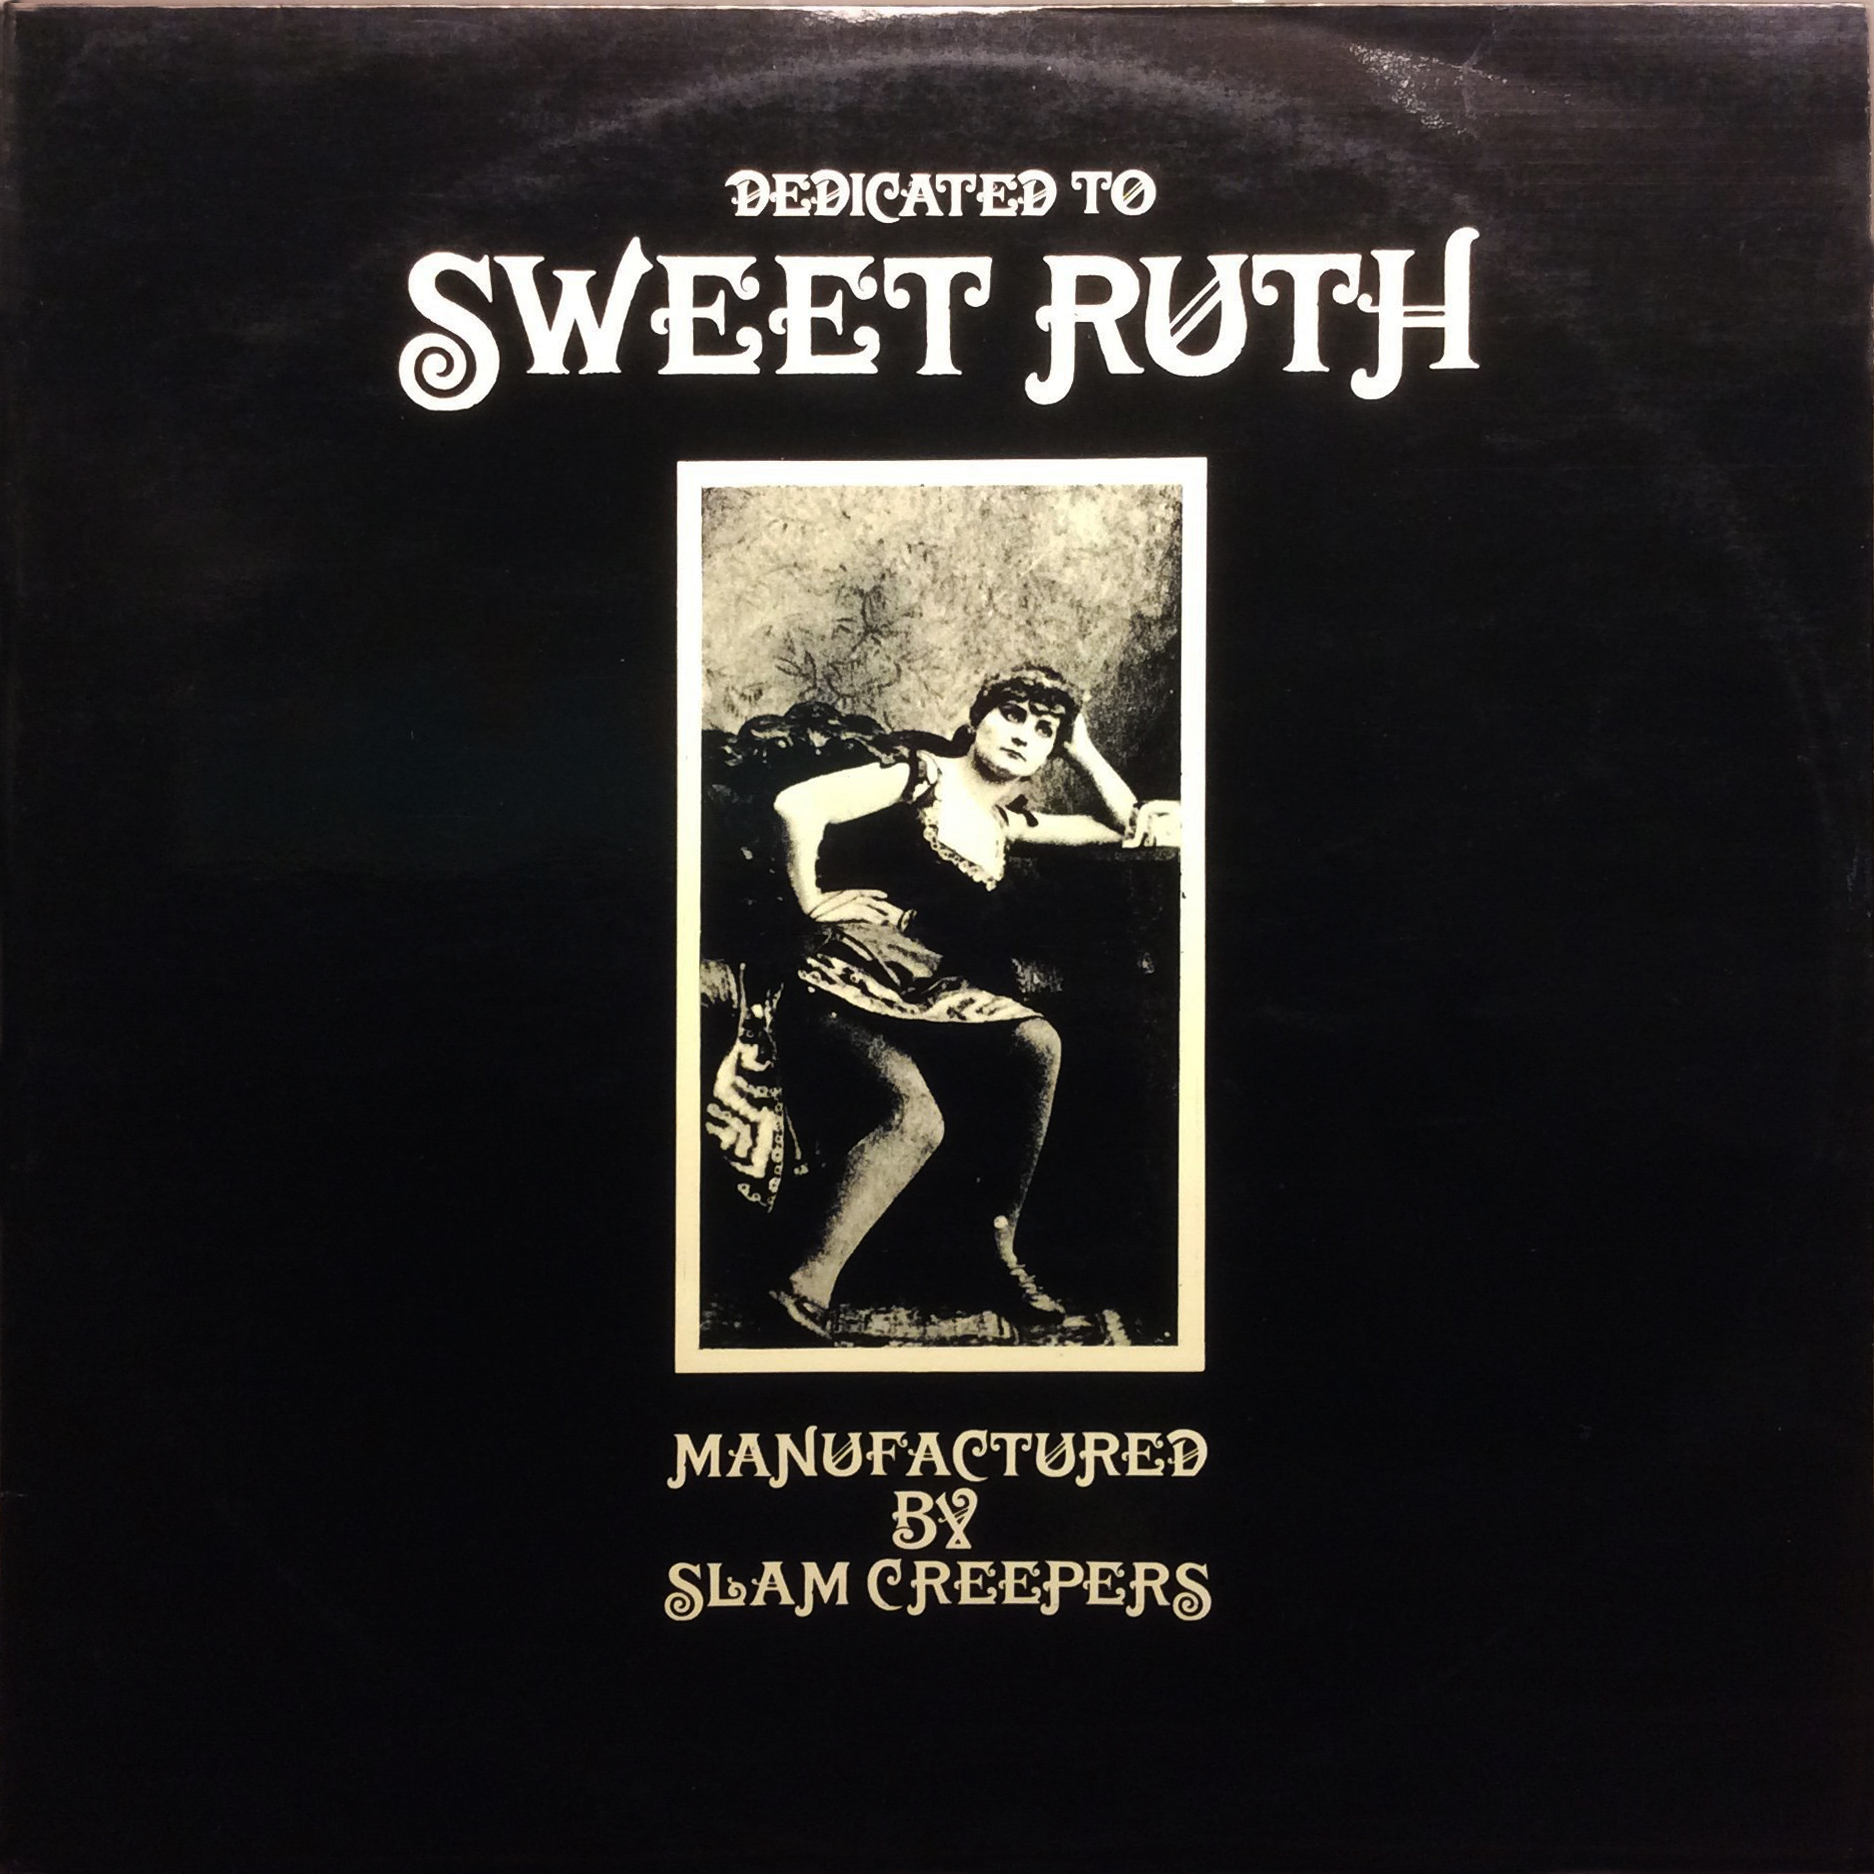 LP Sweet Ruth